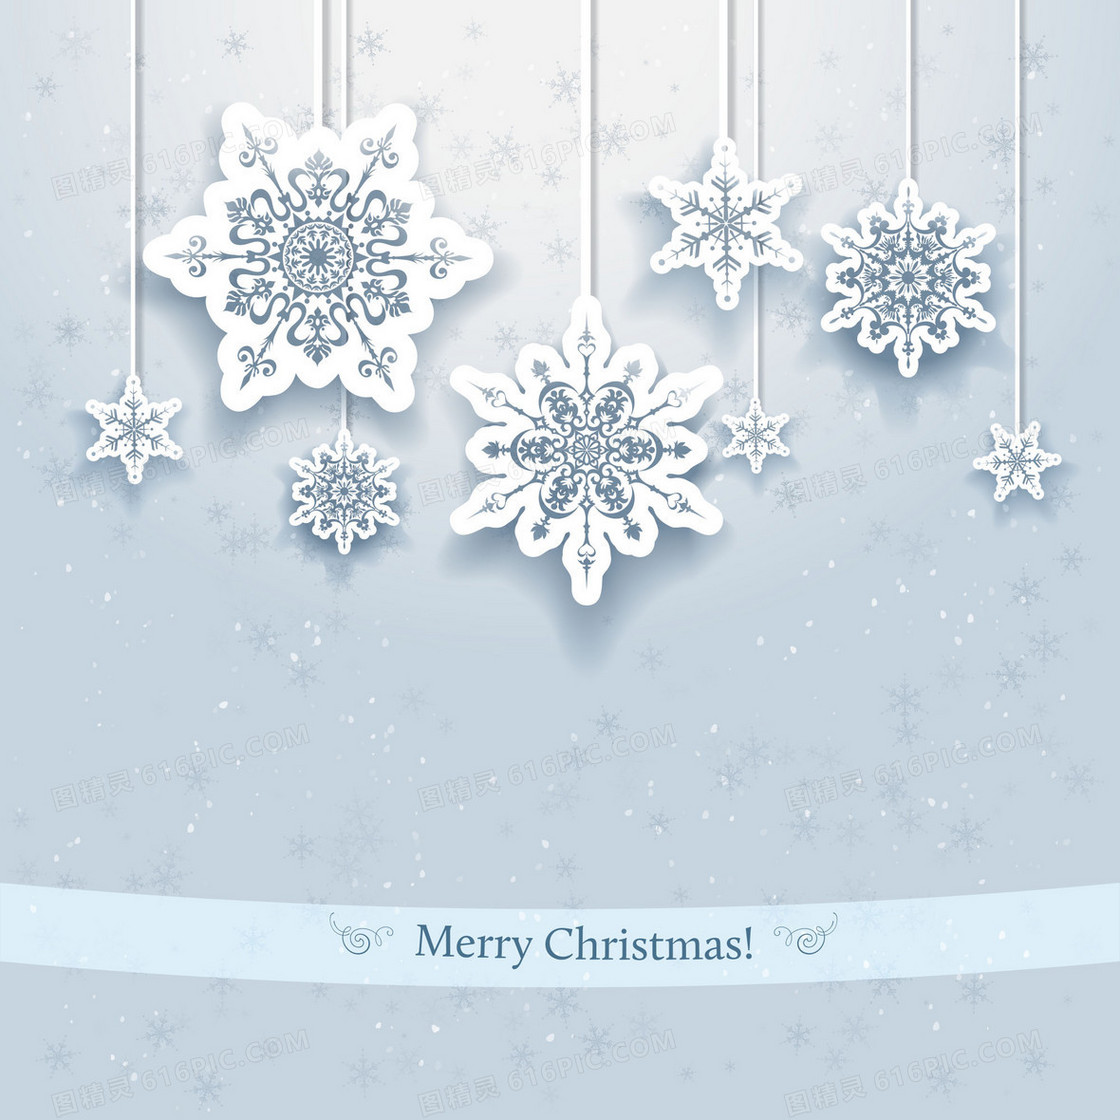 白色圣诞雪花背景素材海报